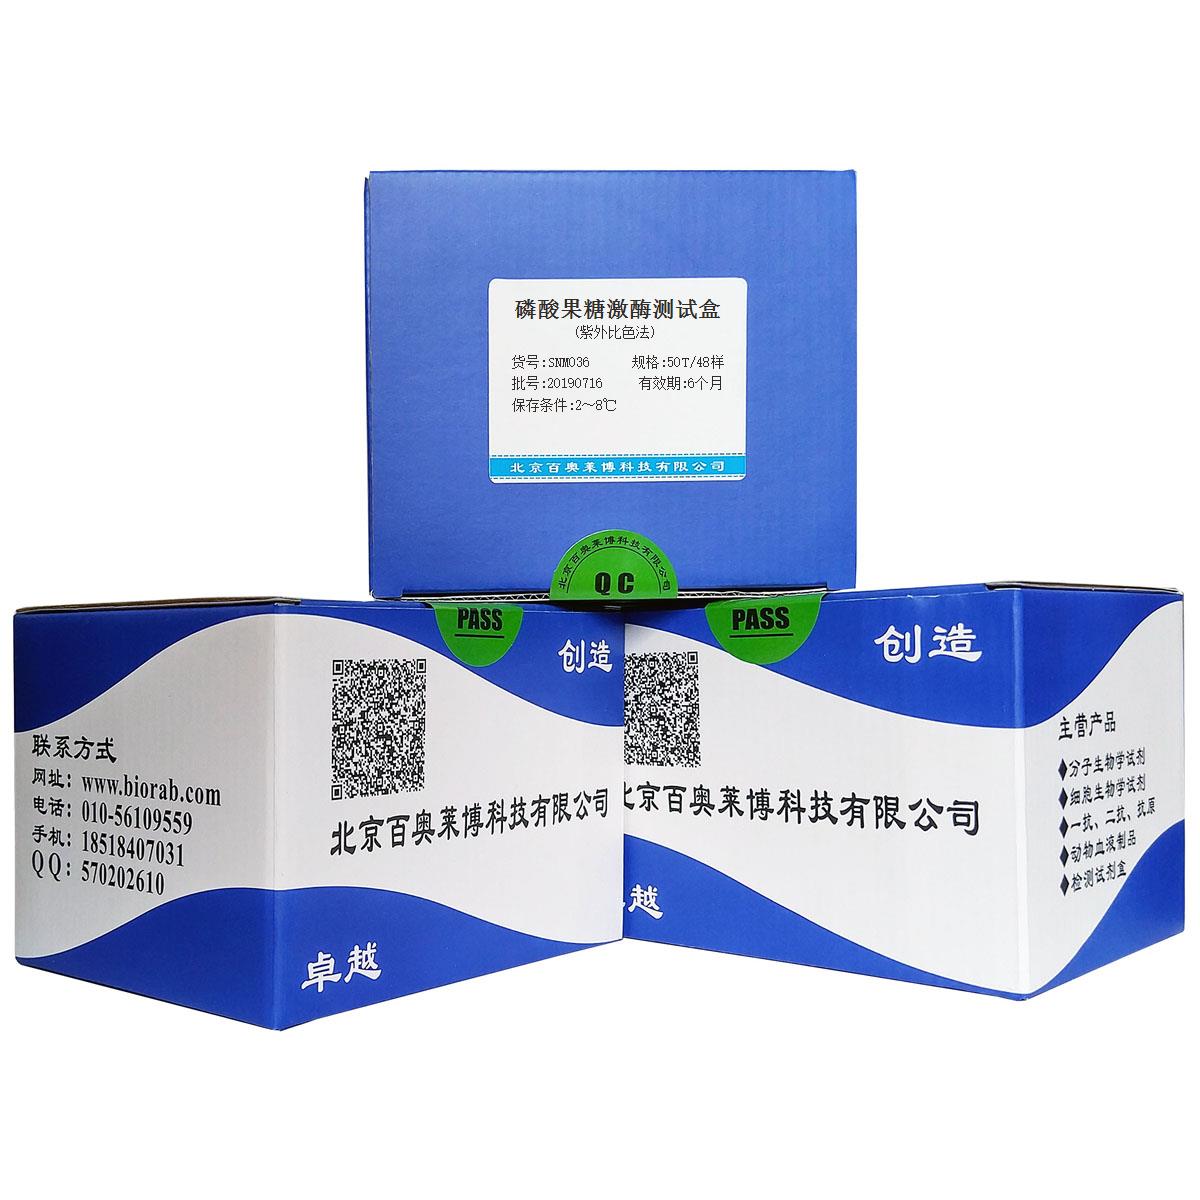 磷酸果糖激酶测试盒(紫外比色法)北京供应商